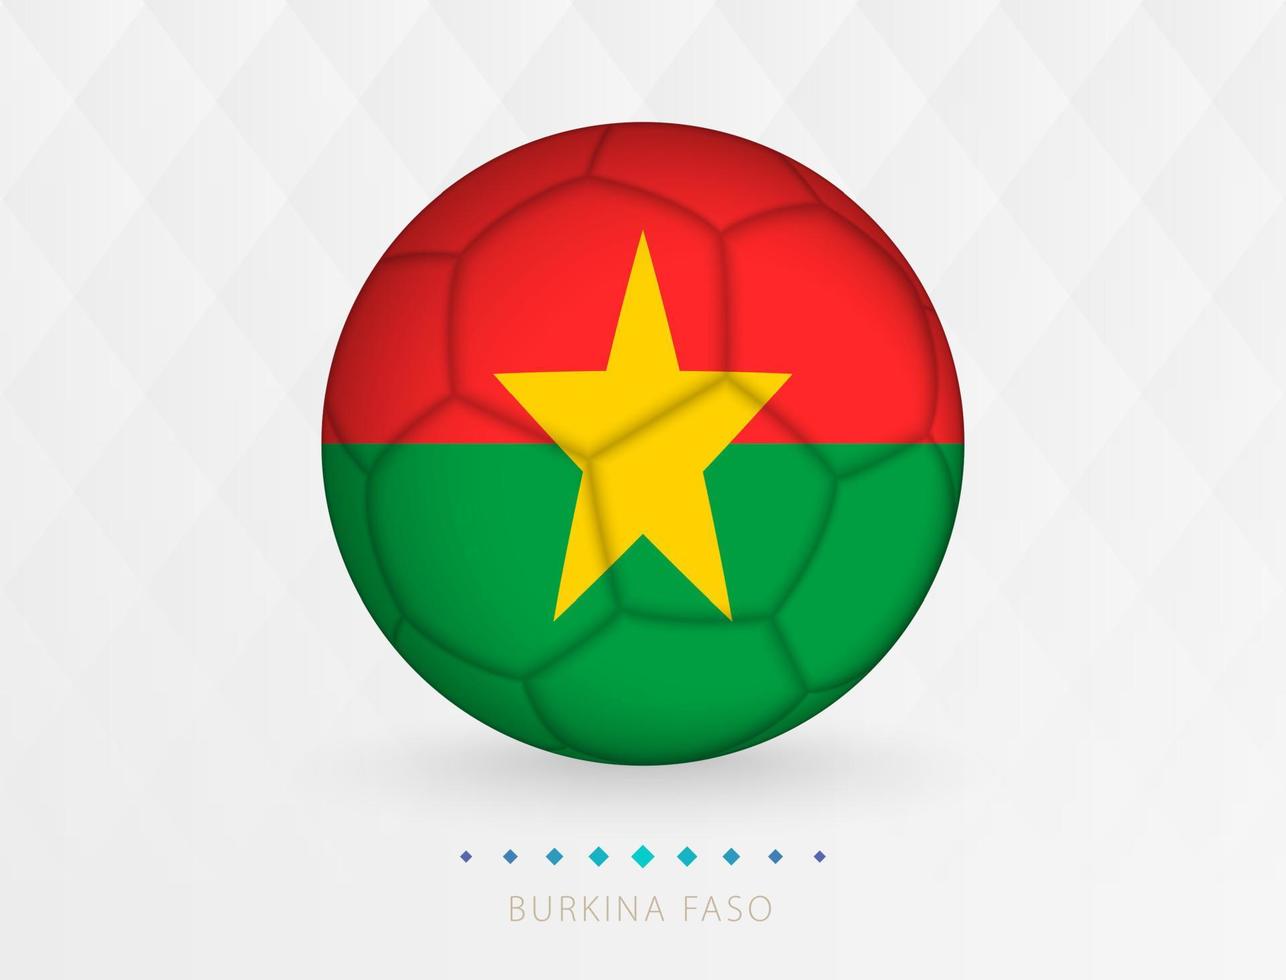 Amerikaans voetbal bal met Burkina faso vlag patroon, voetbal bal met vlag van Burkina faso nationaal team. vector